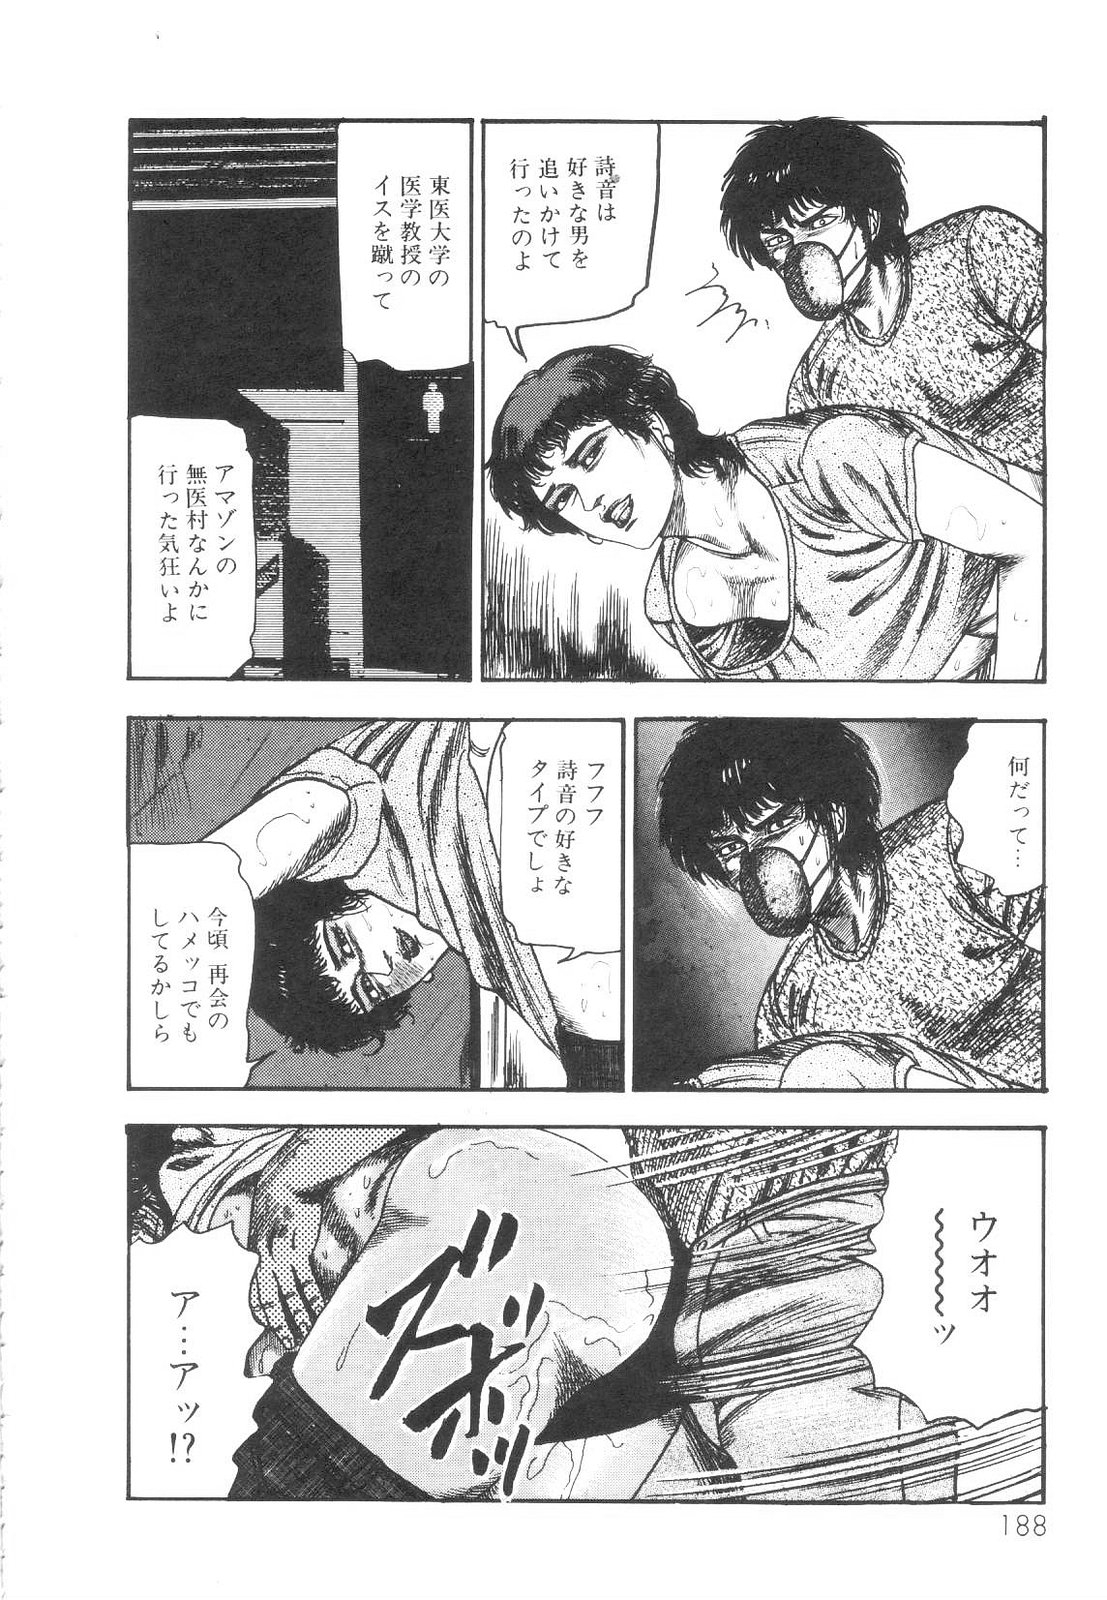 [Sanjou Tomomi] Shiro no Mokushiroku Vol. 1 - Sei Shojo Shion no Shou 188